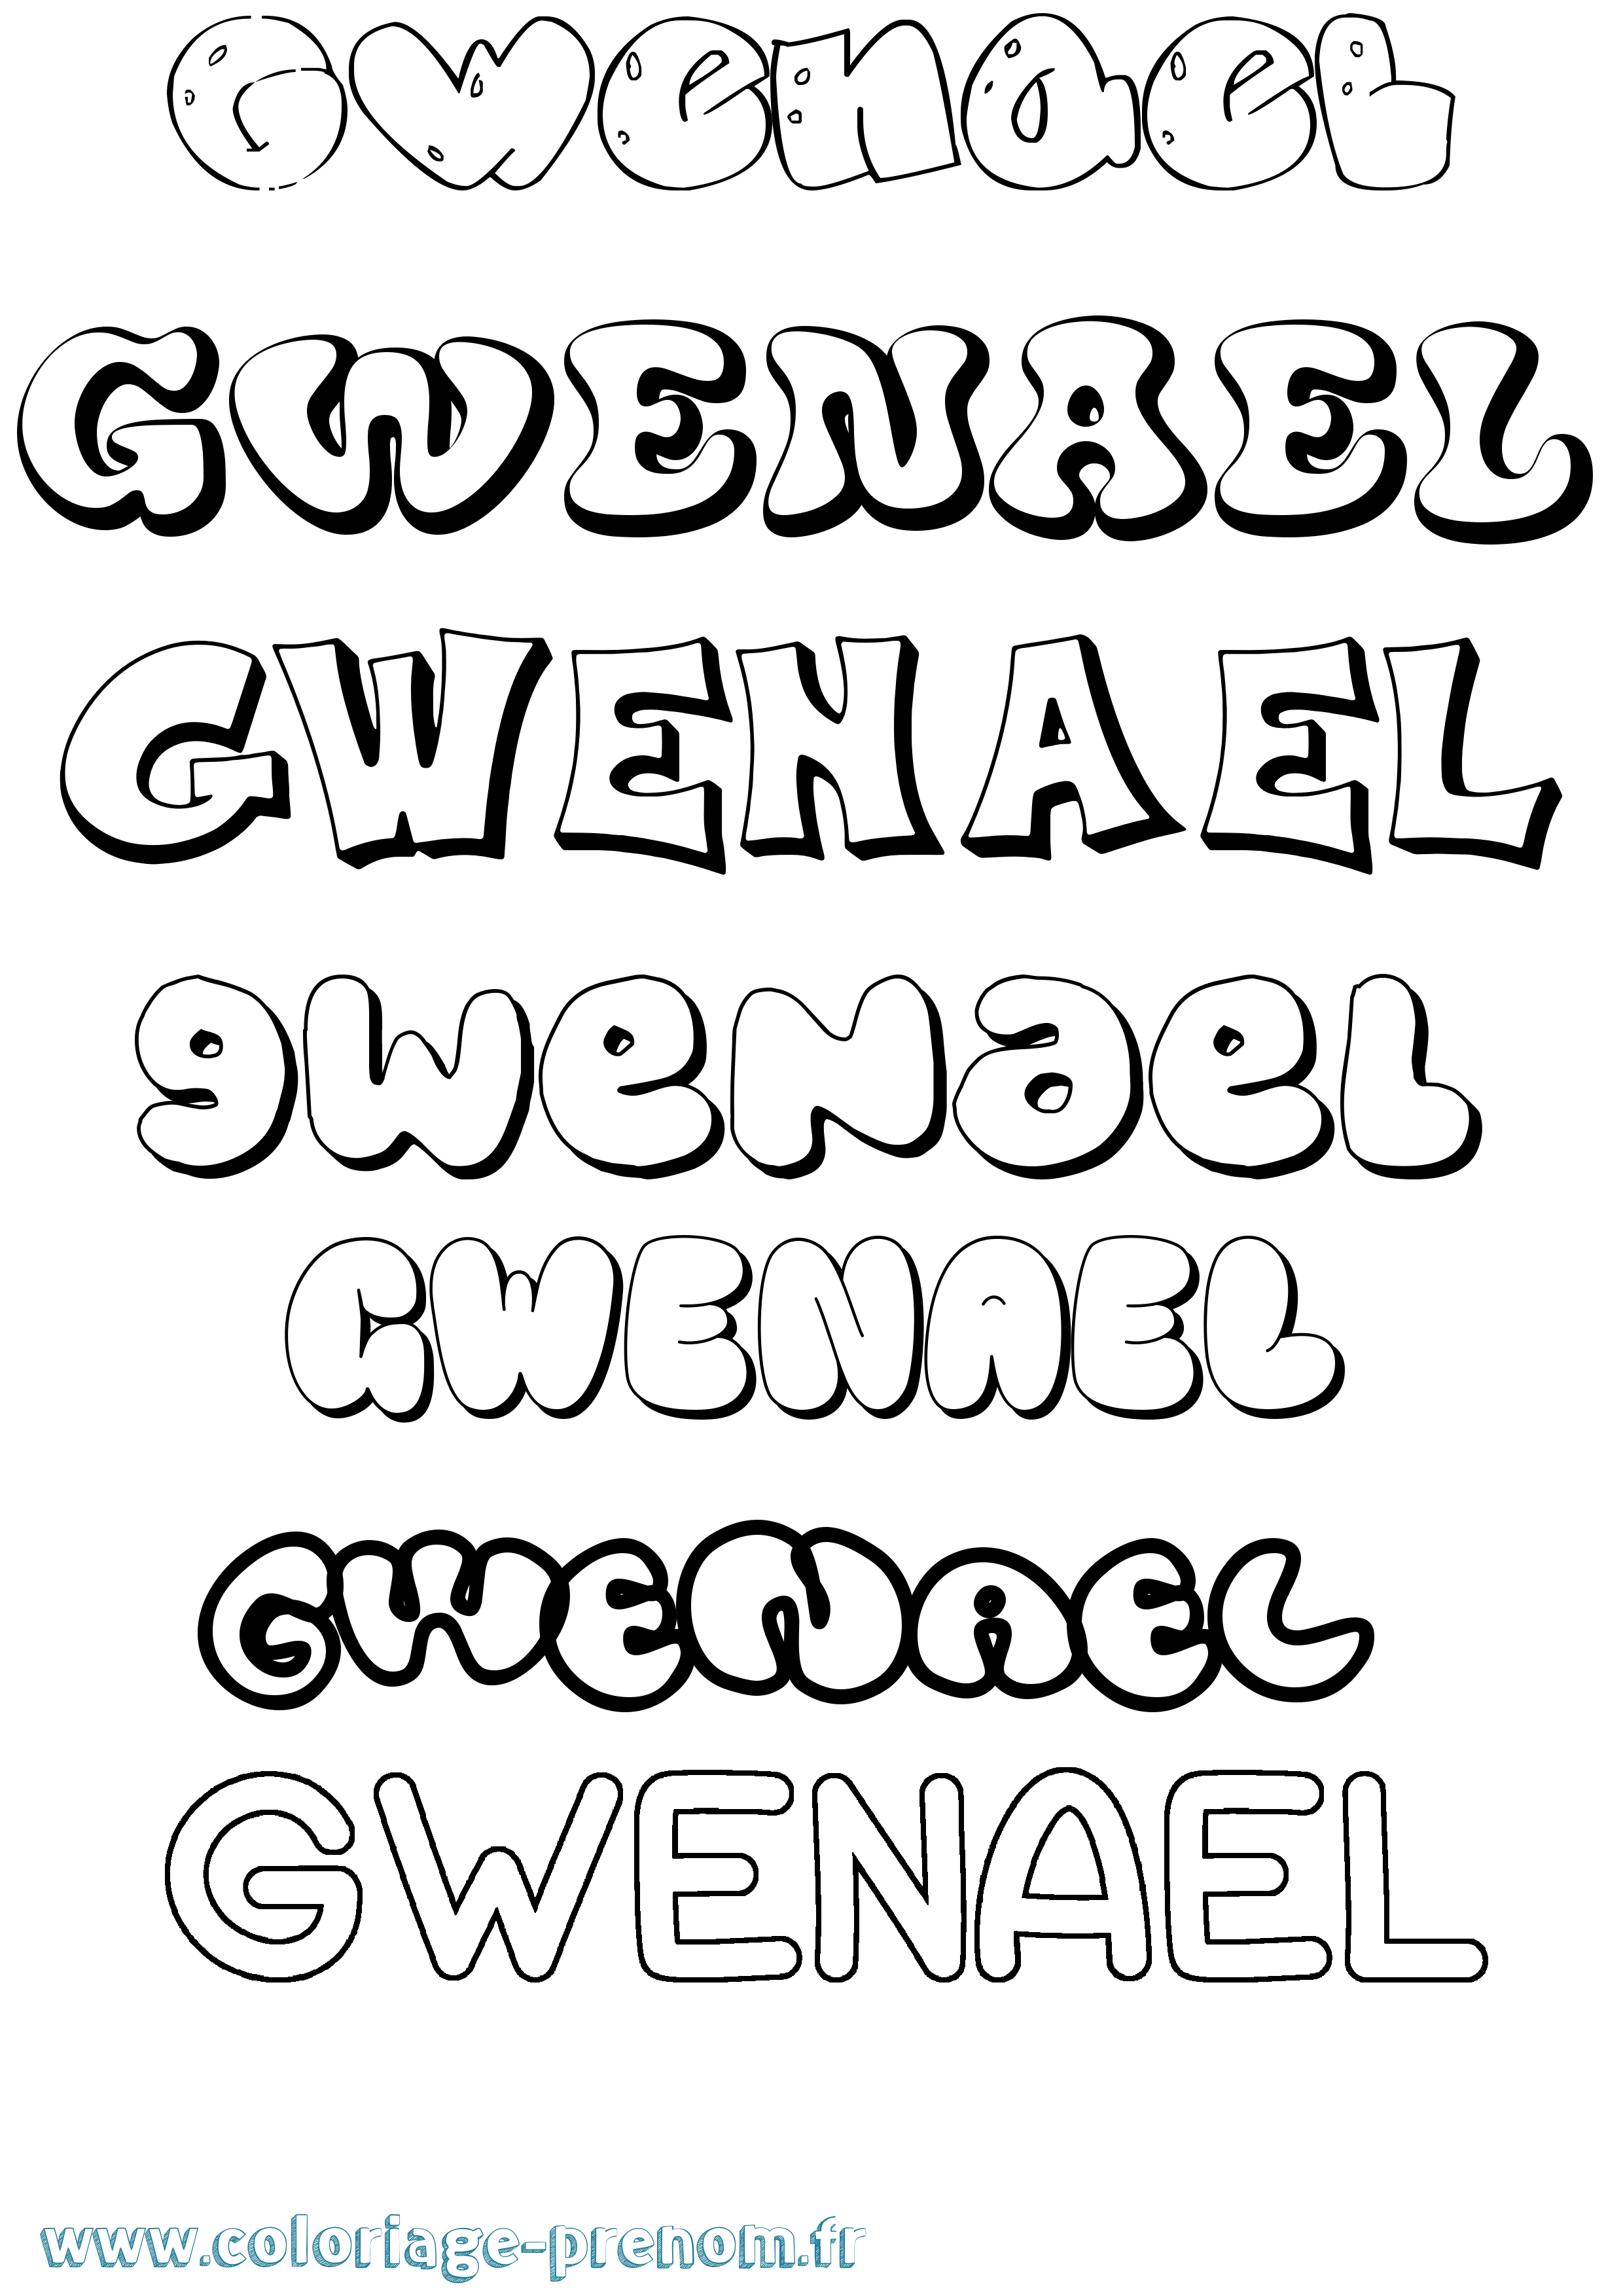 Coloriage prénom Gwenael Bubble